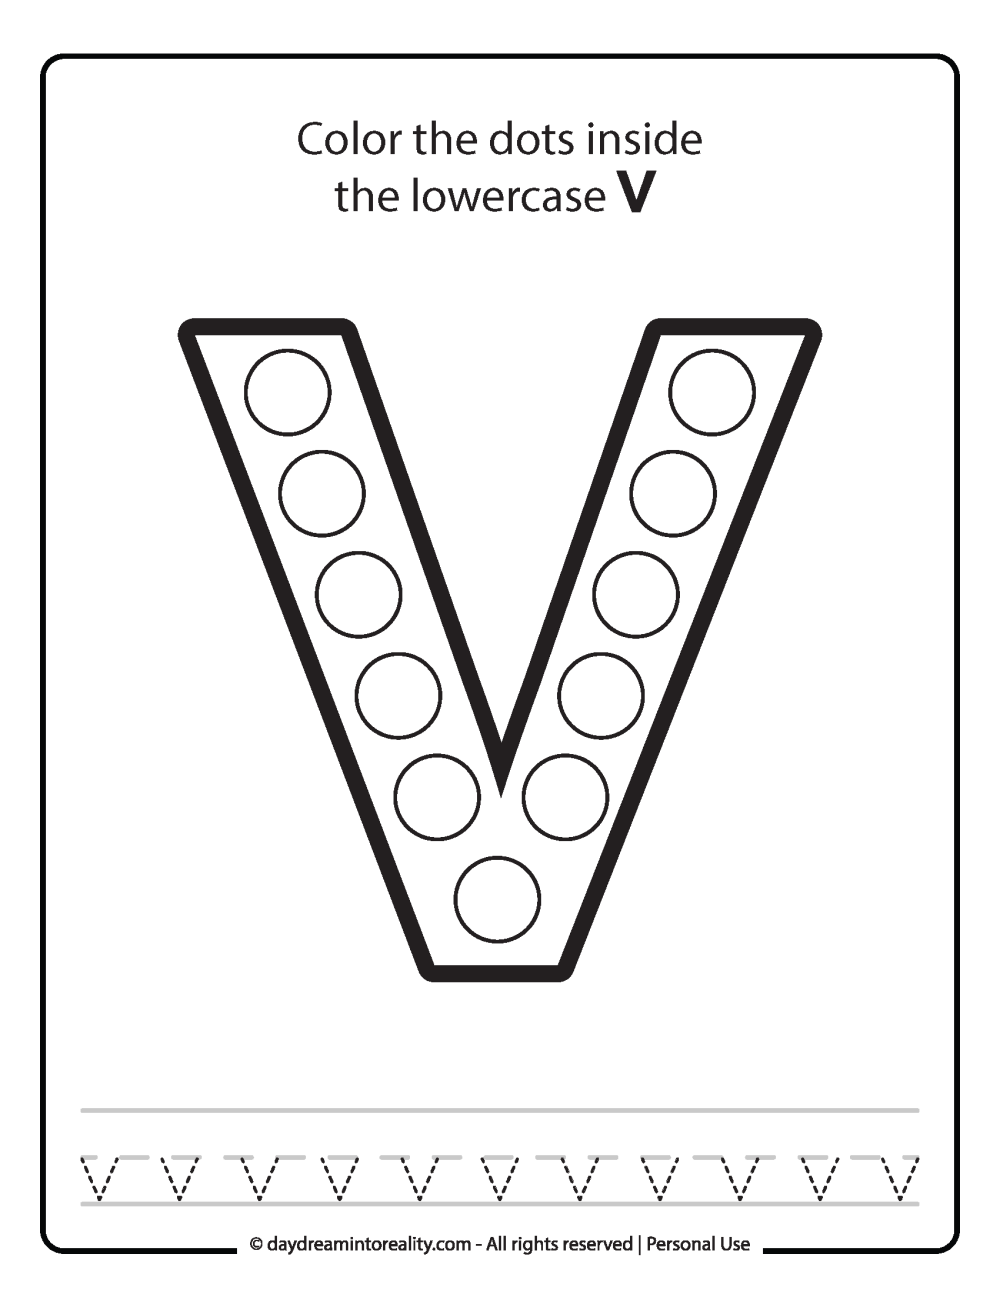 Lowercase "v" Dot Marker Worksheet Free Printable activity for kids (preschool, kindergarten)